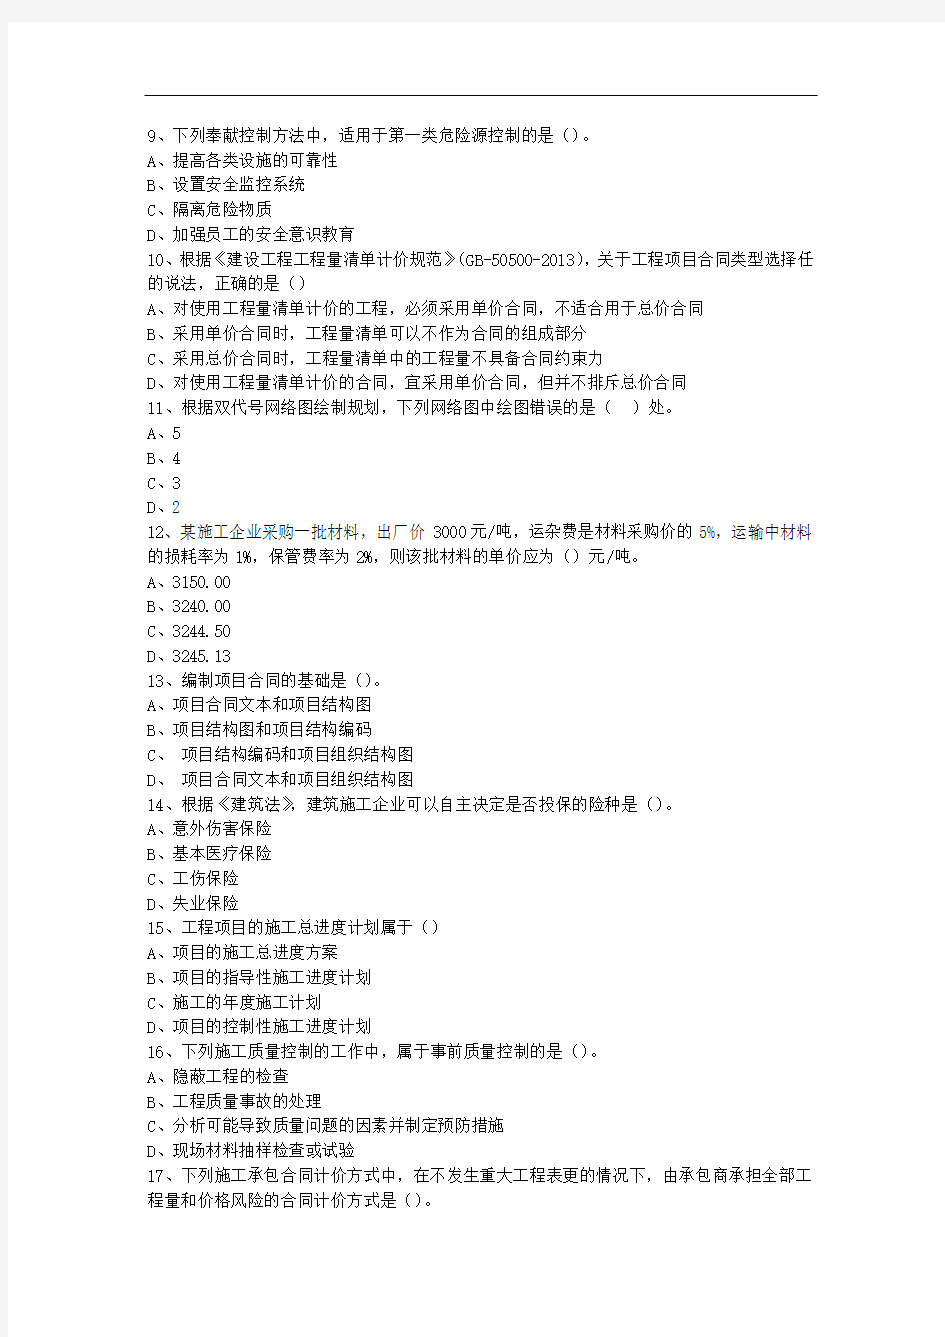 2013三级浙江省建造师法规最新考试试题库(完整版)